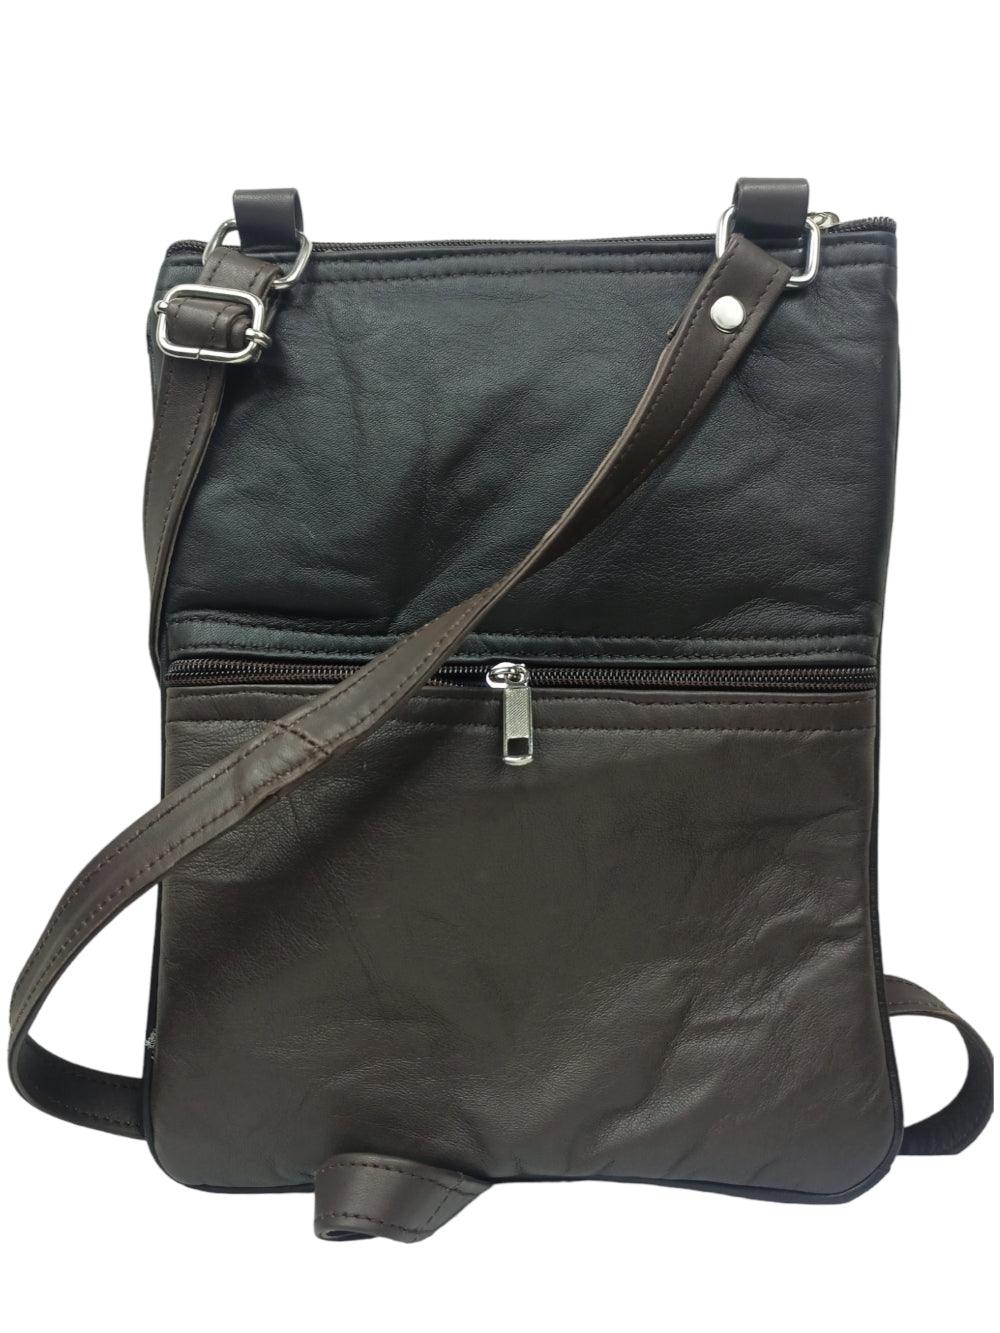 Kashmiri Embroided Sling Bag | Plain 5 Zipper | Sling Bag For Girls - ZANSKAR ARTS